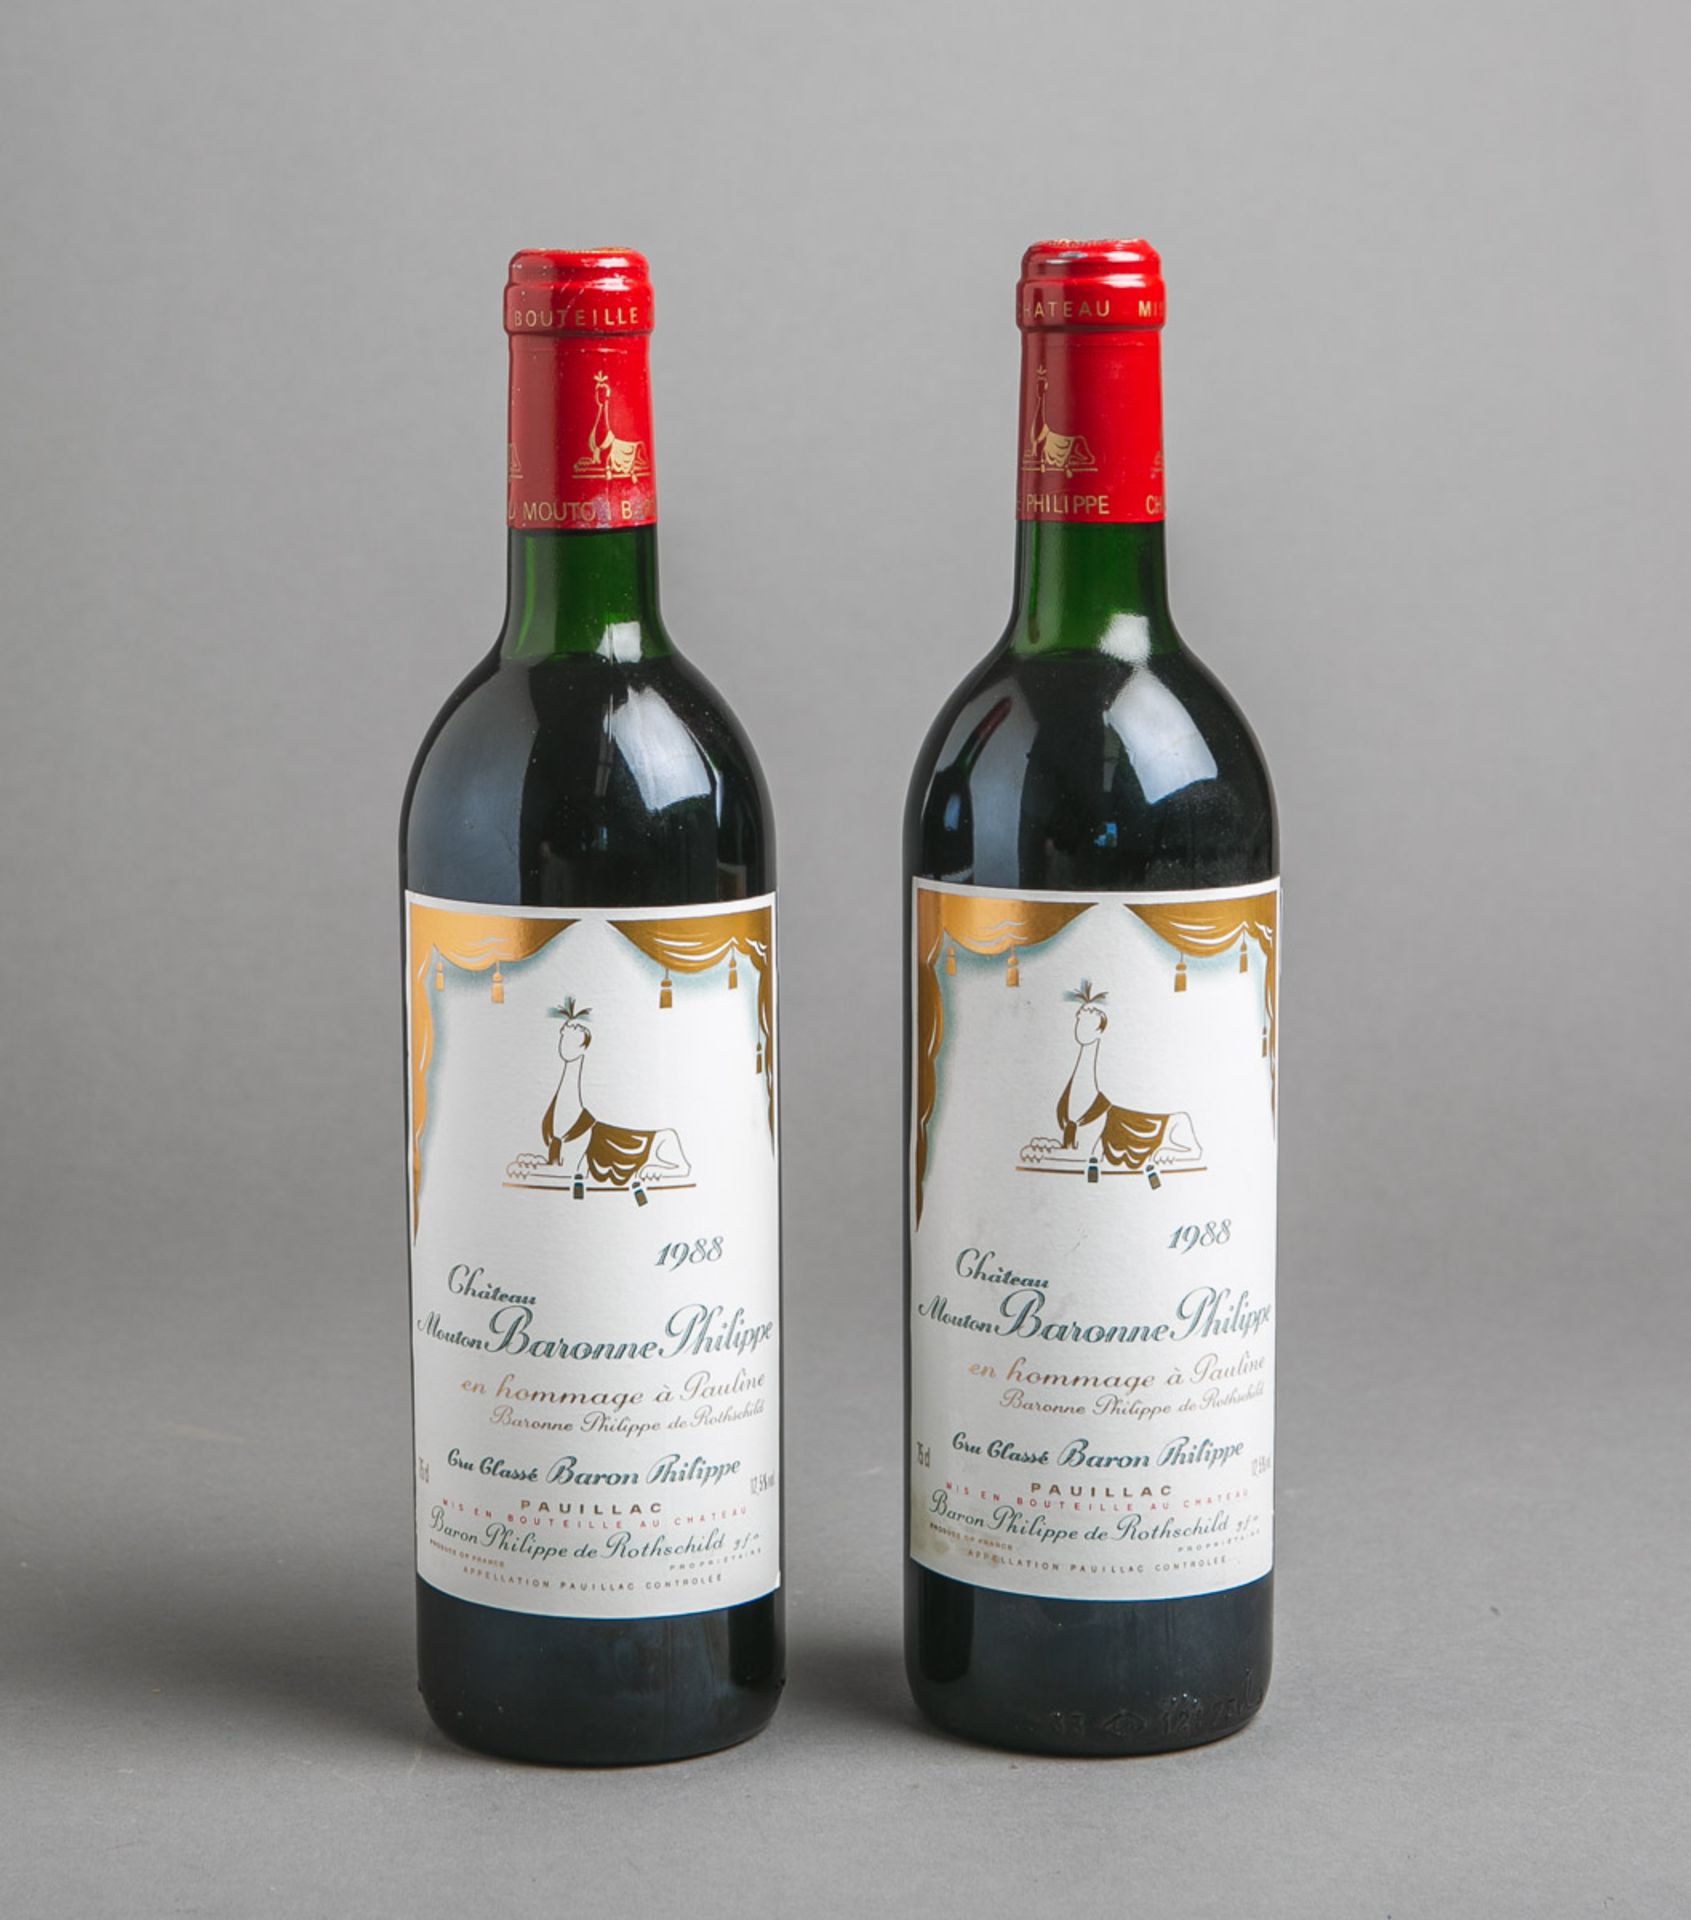 2 Flaschen Wein "Chateau Mouton Baronne Philippe" en hommage à Pauline, Jahrgang 1988